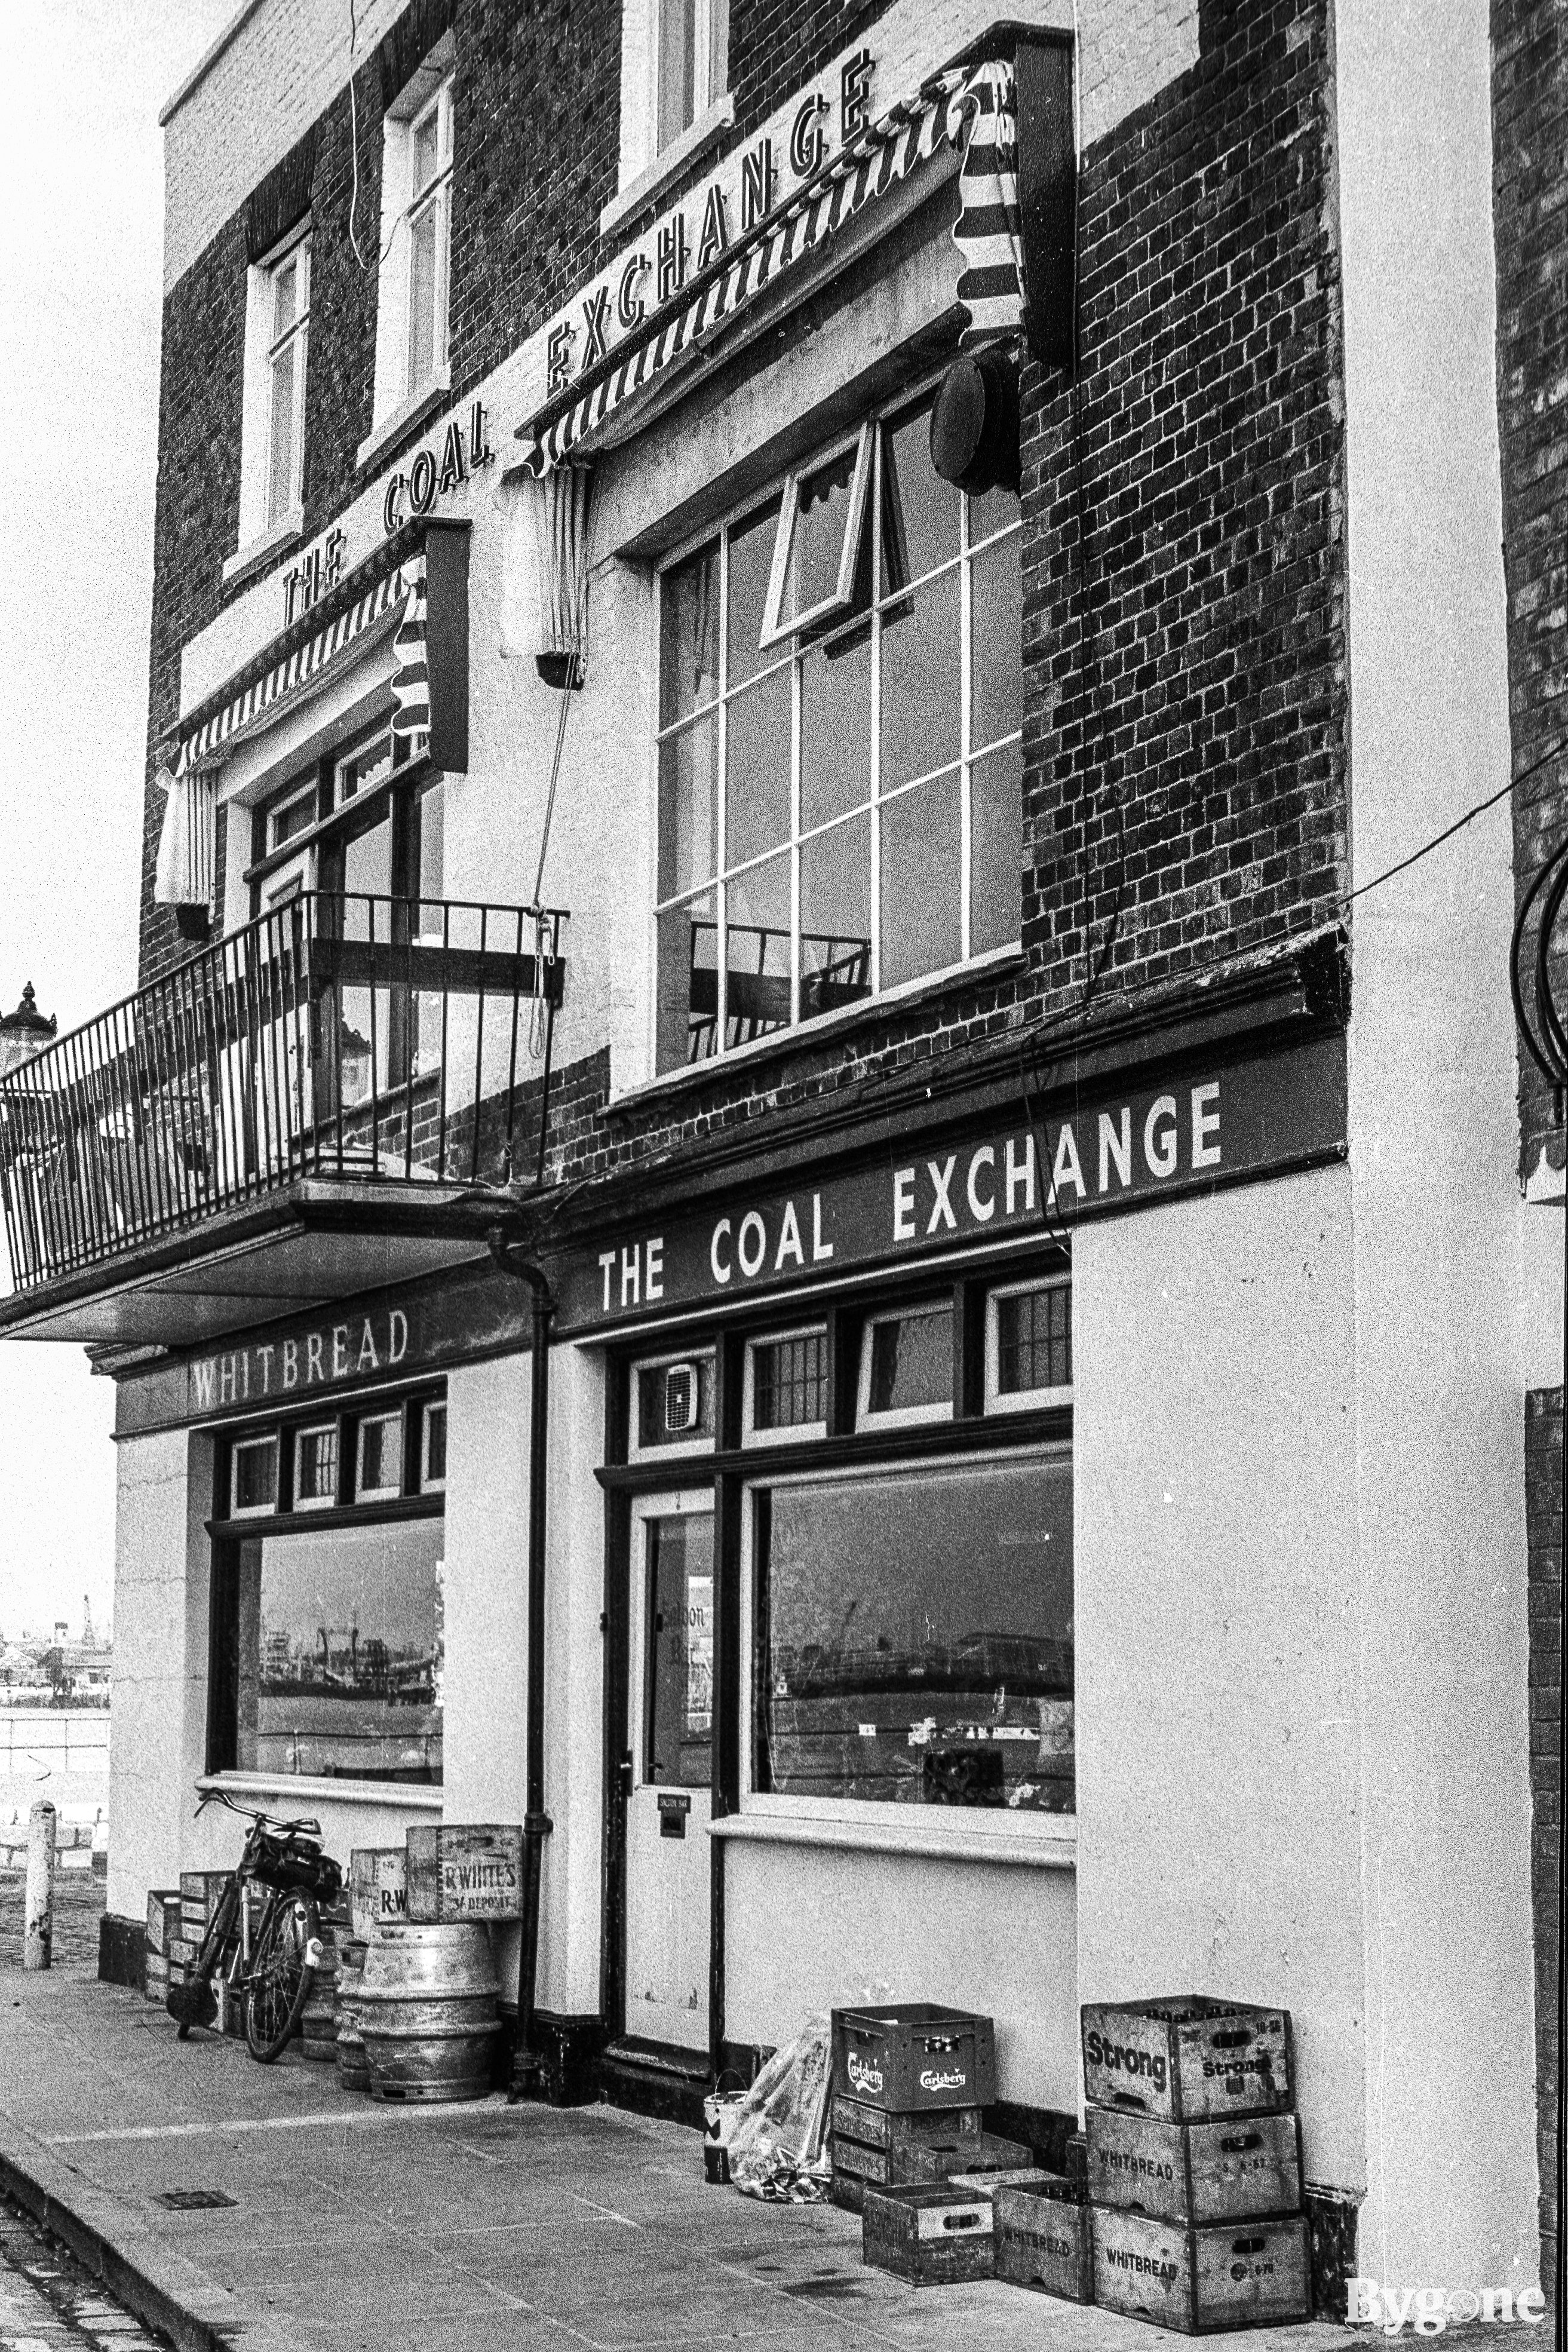 The Coal Exchange